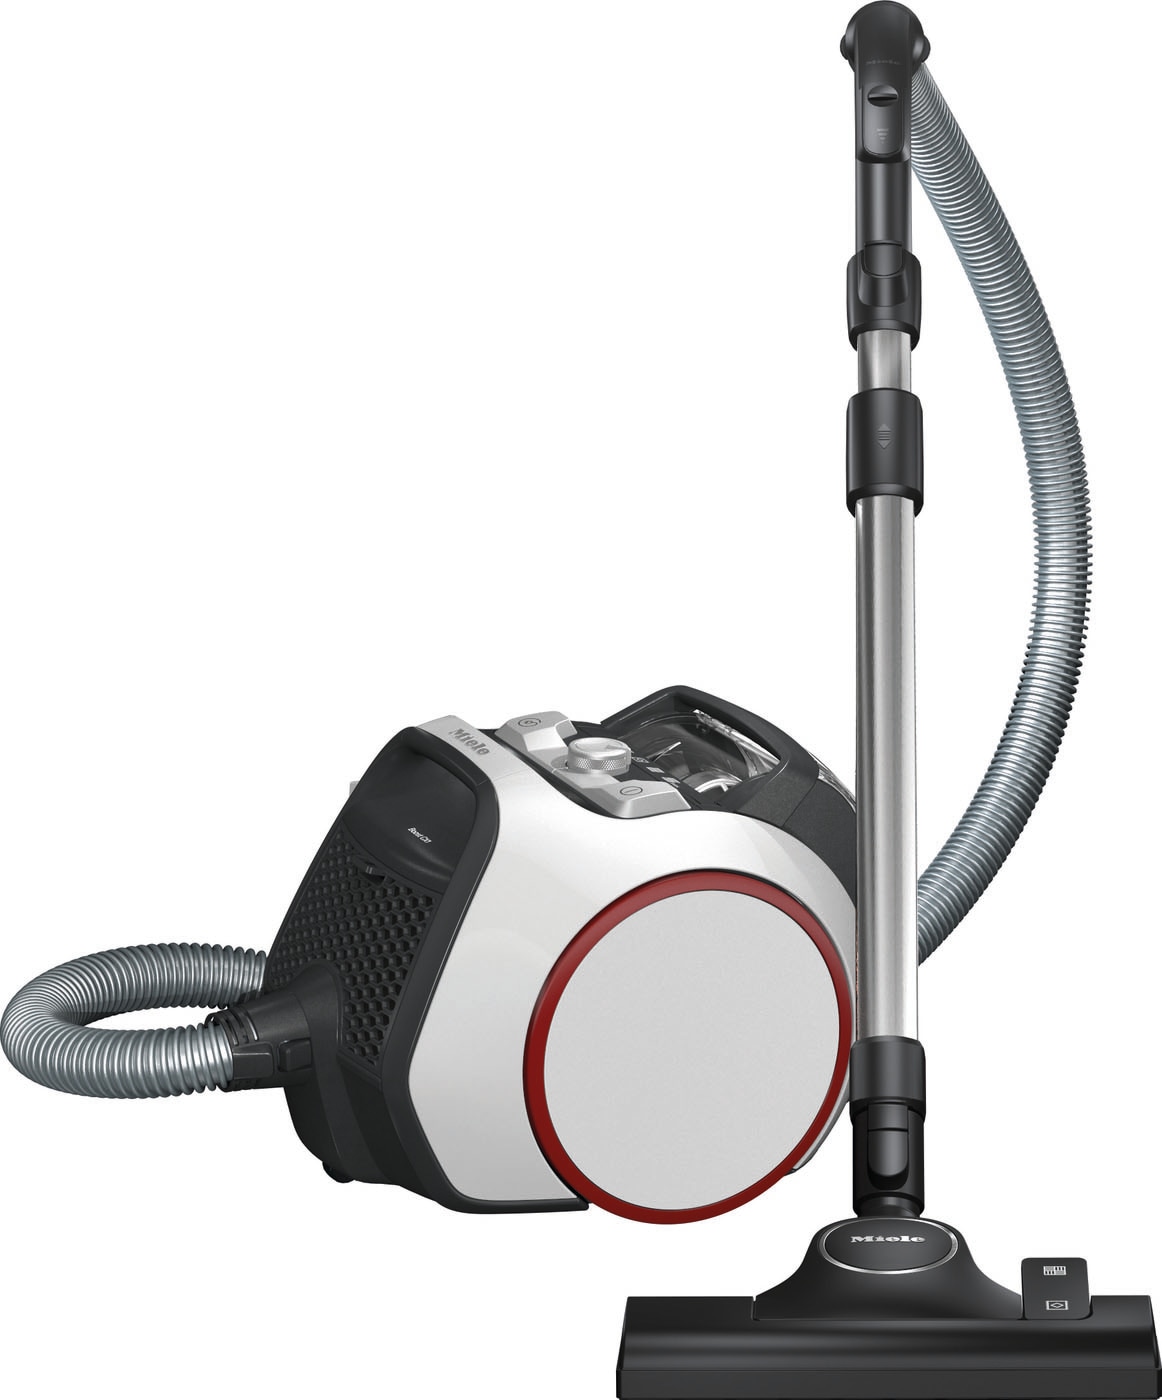 Miele Boost CX1 – Beutelloser Bodenstaubsauger mit Vortex-Technologie und Hygiene AirClean Filter – Leistungsstark, kompakt und wendig – In Lotosweiß/Rot